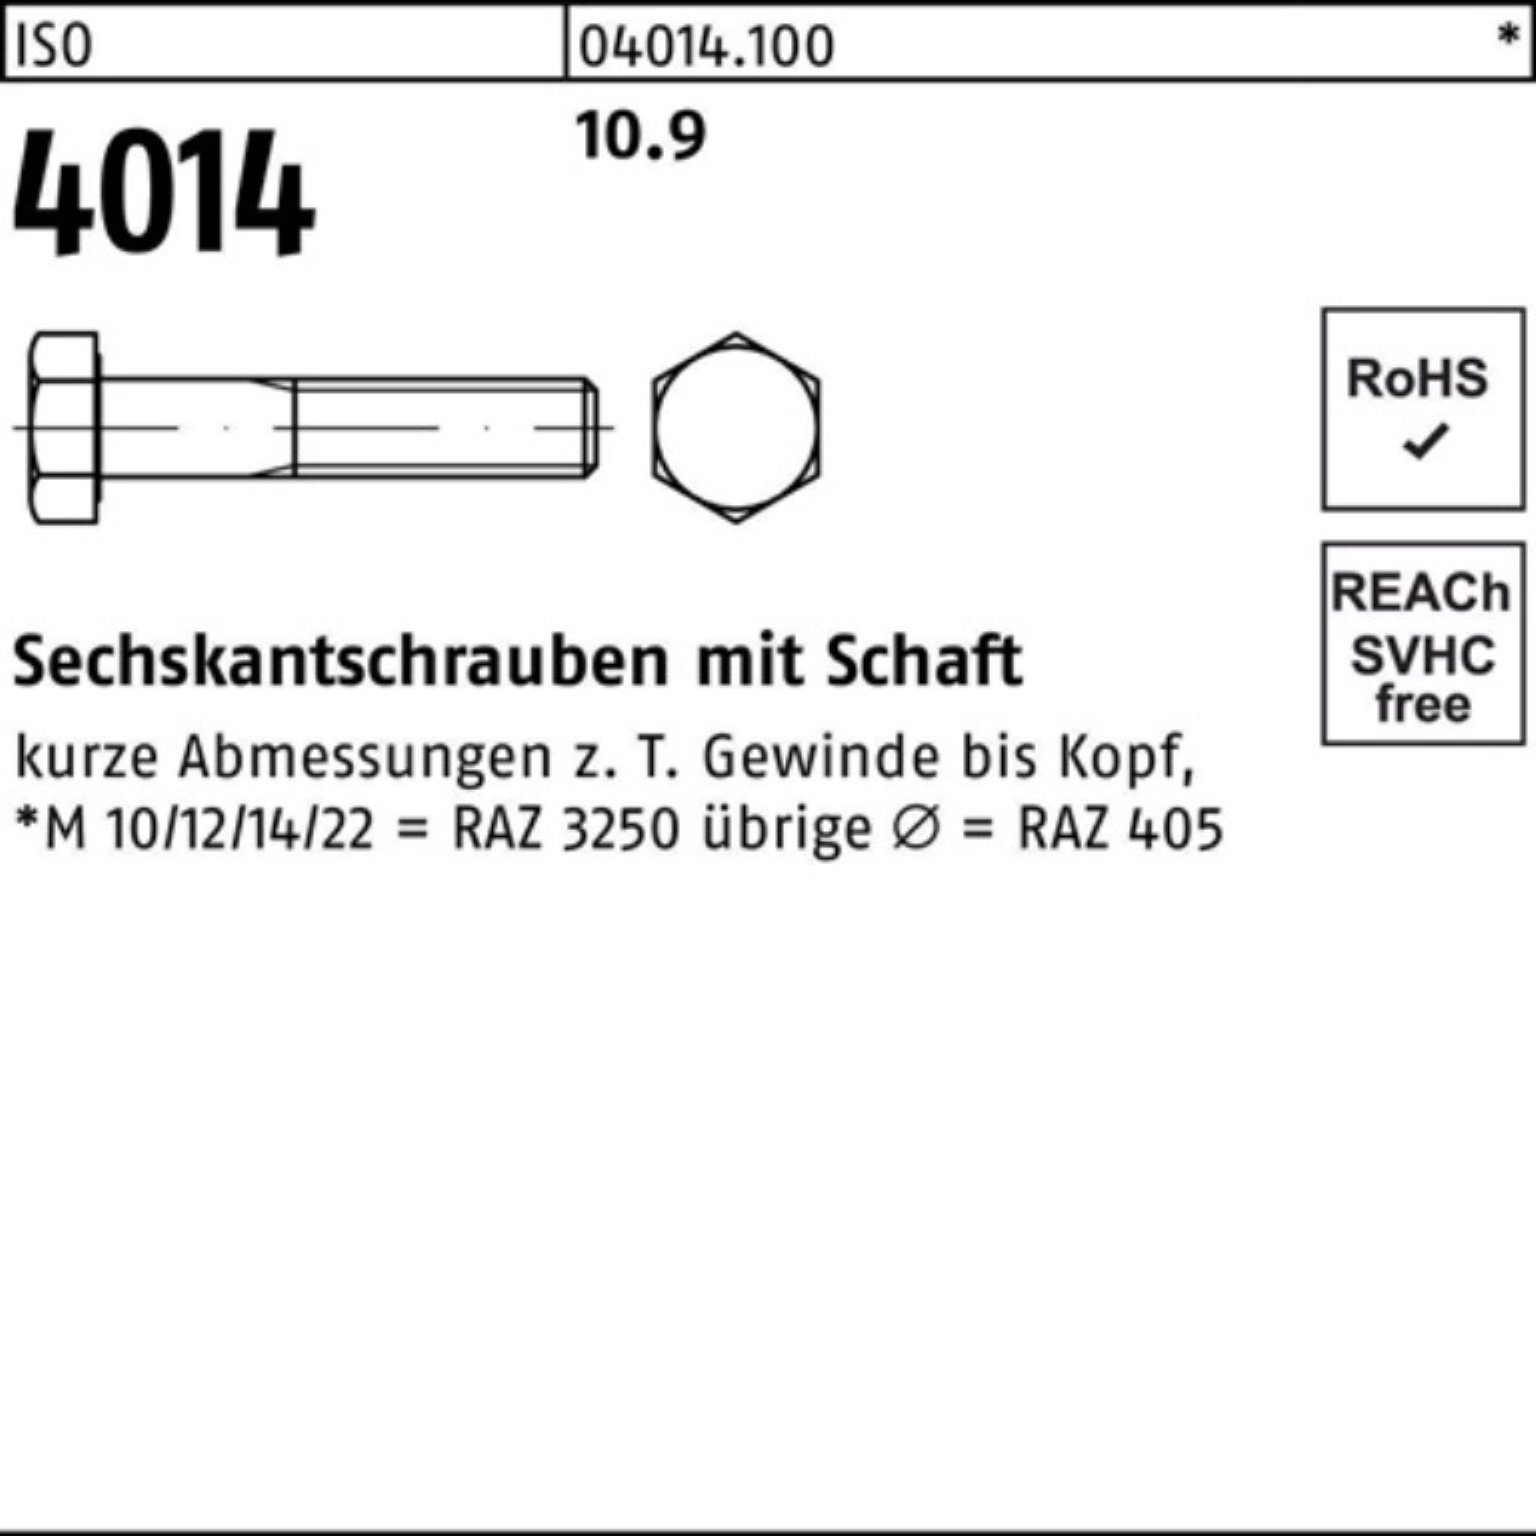 Sechskantschraube Bufab 100 10.9 ISO 100er Sechskantschraube 60 Stück 4014 Schaft I M10x Pack